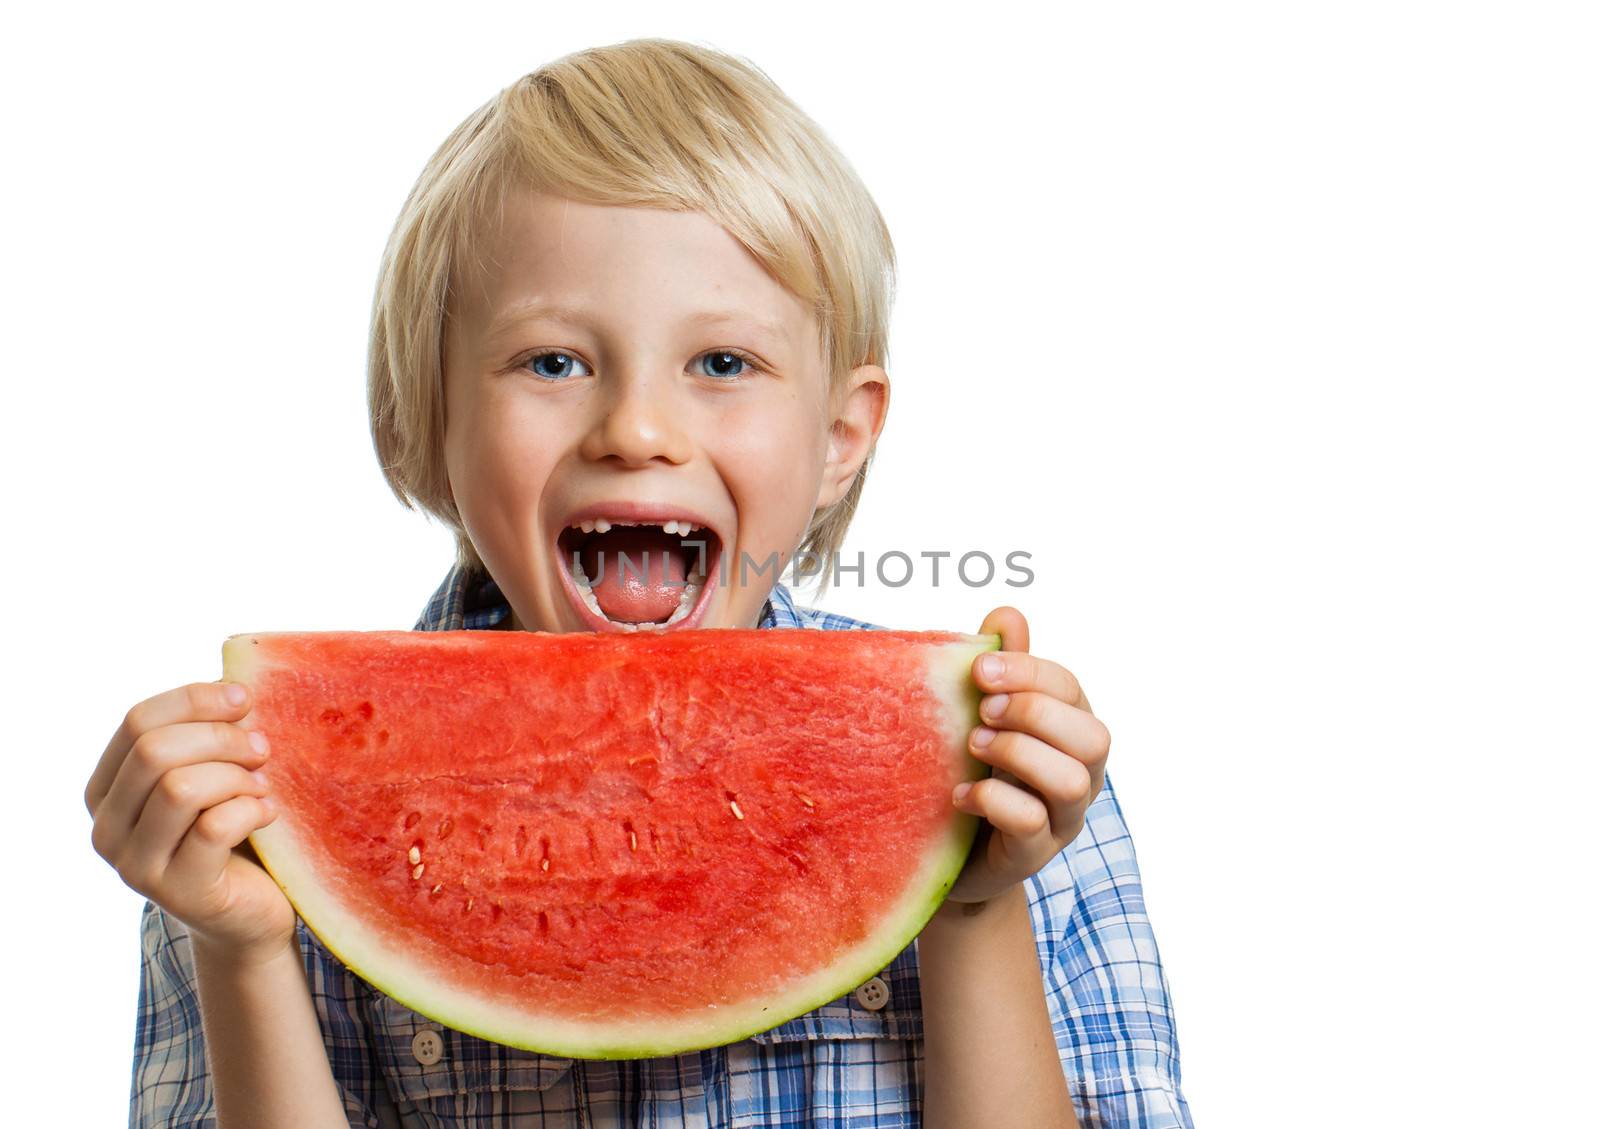 Smiling boy taking bite of water melon by Jaykayl